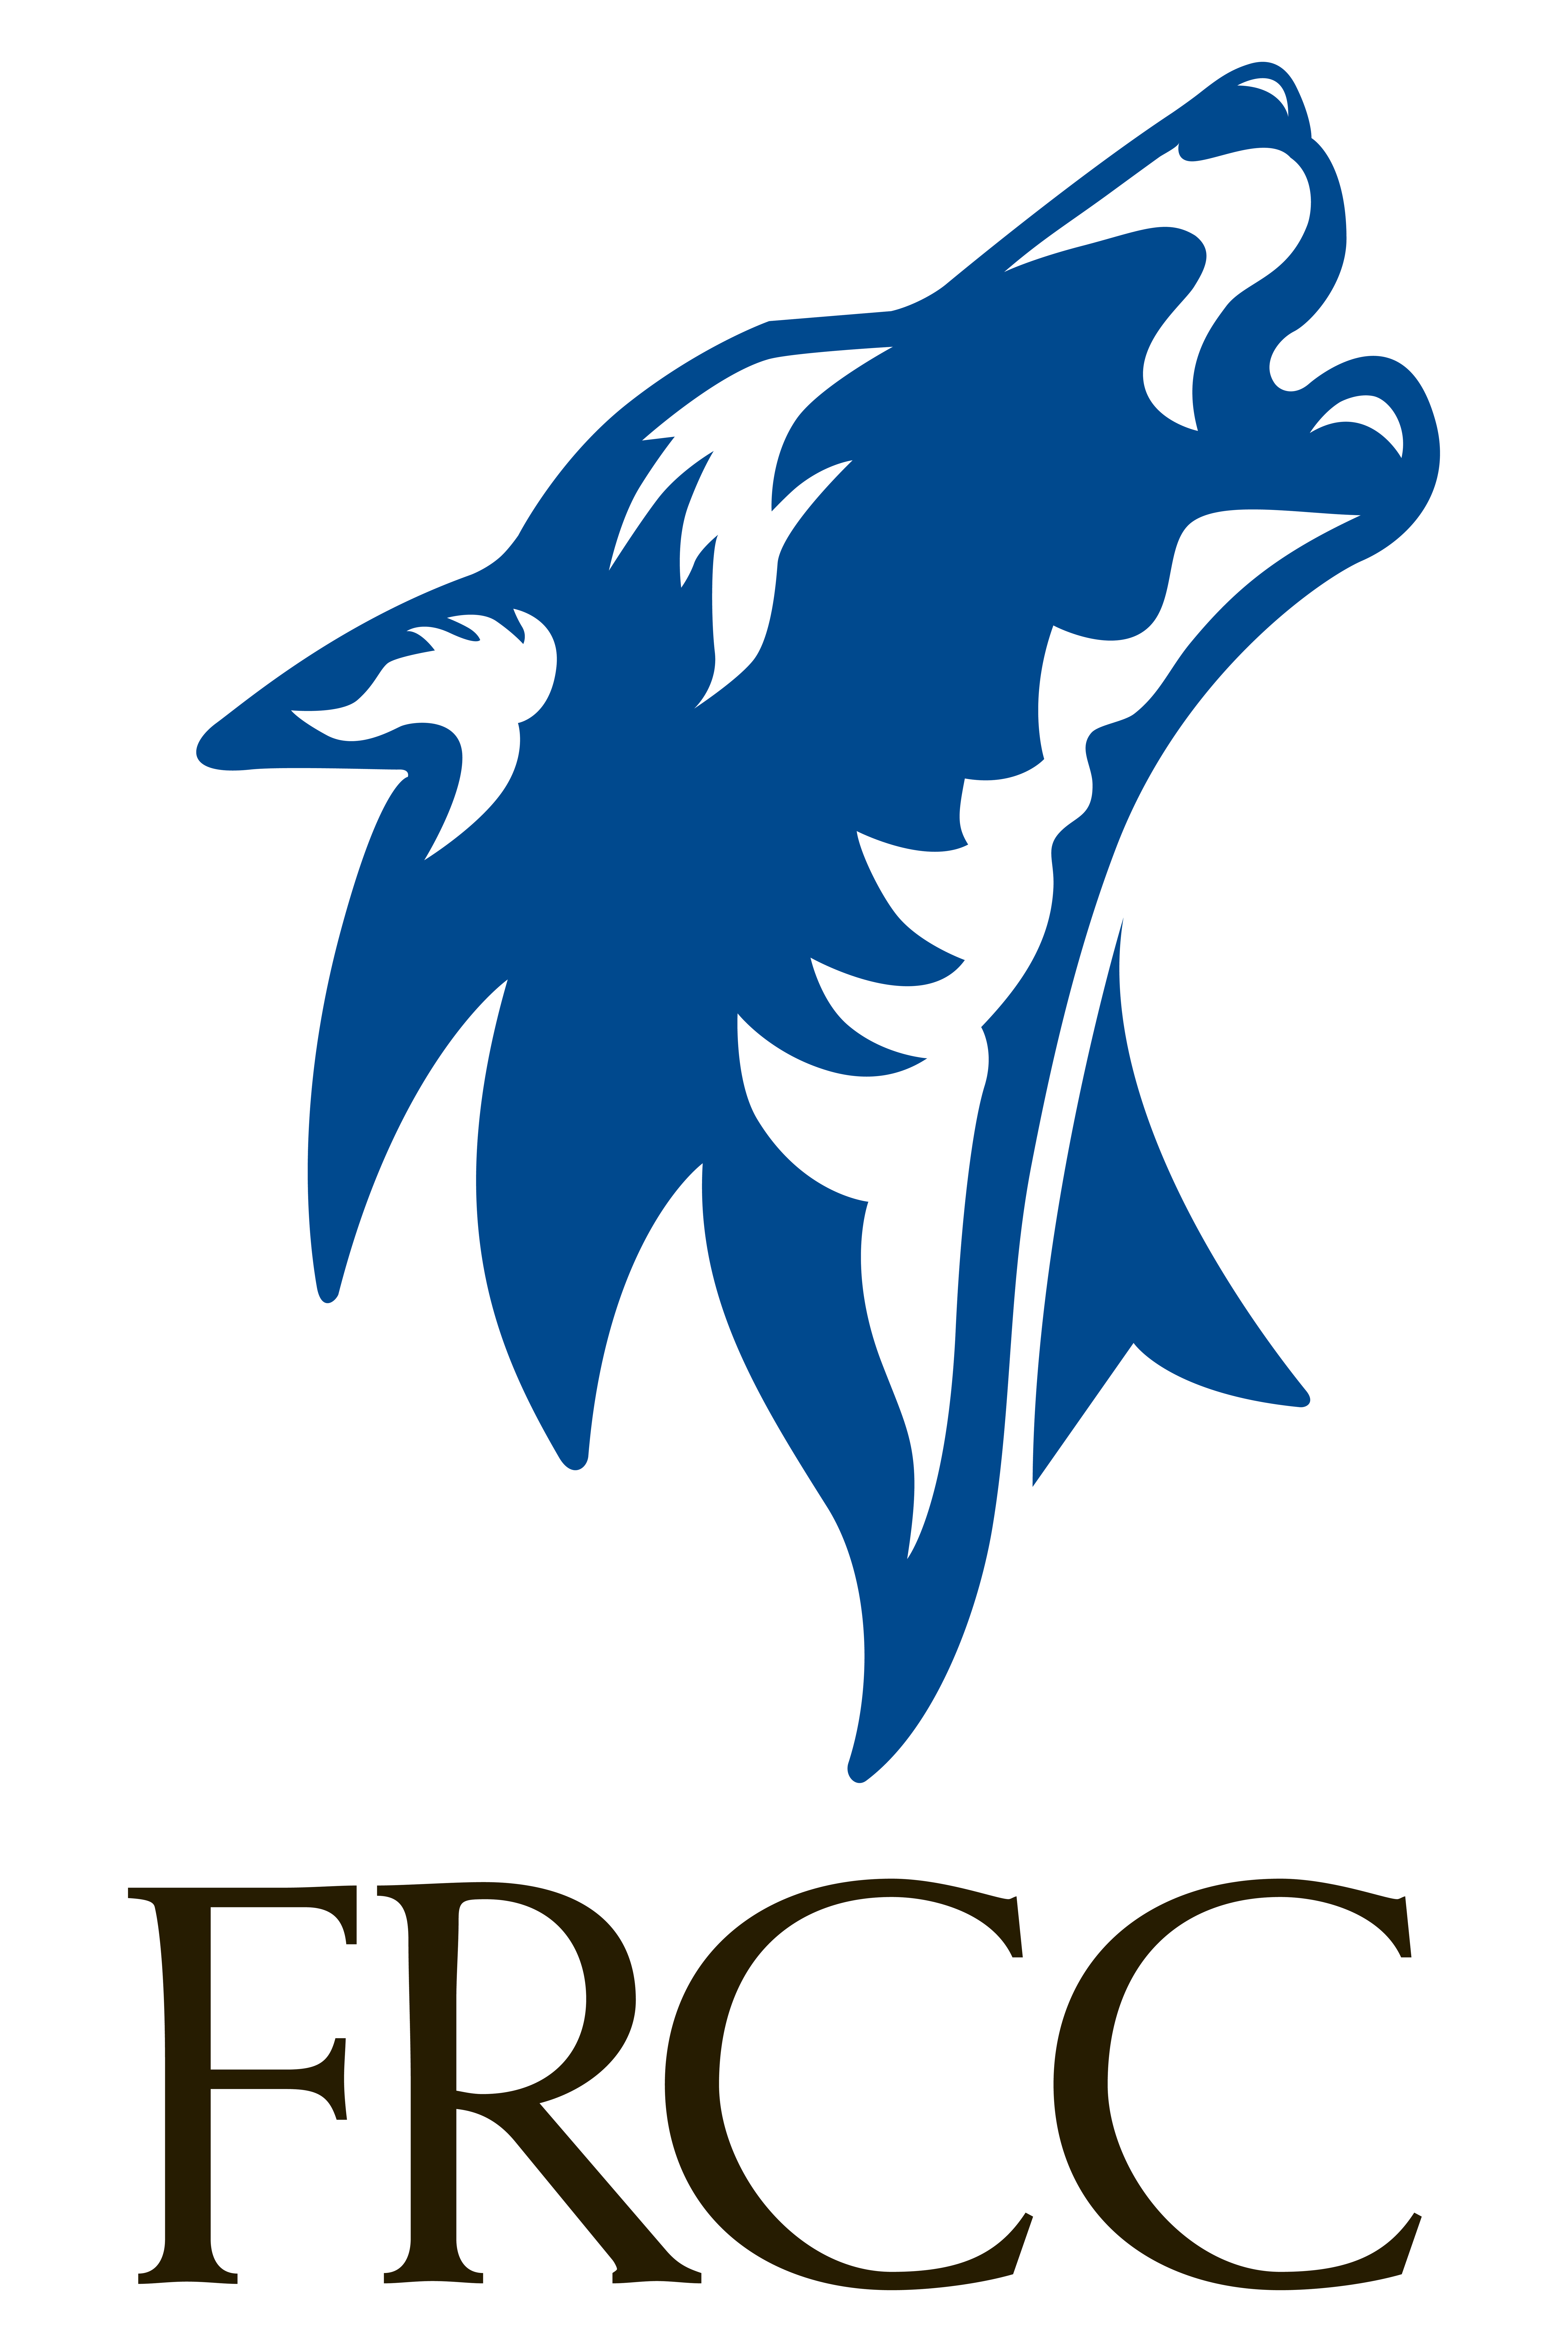 FRCC wolf logo